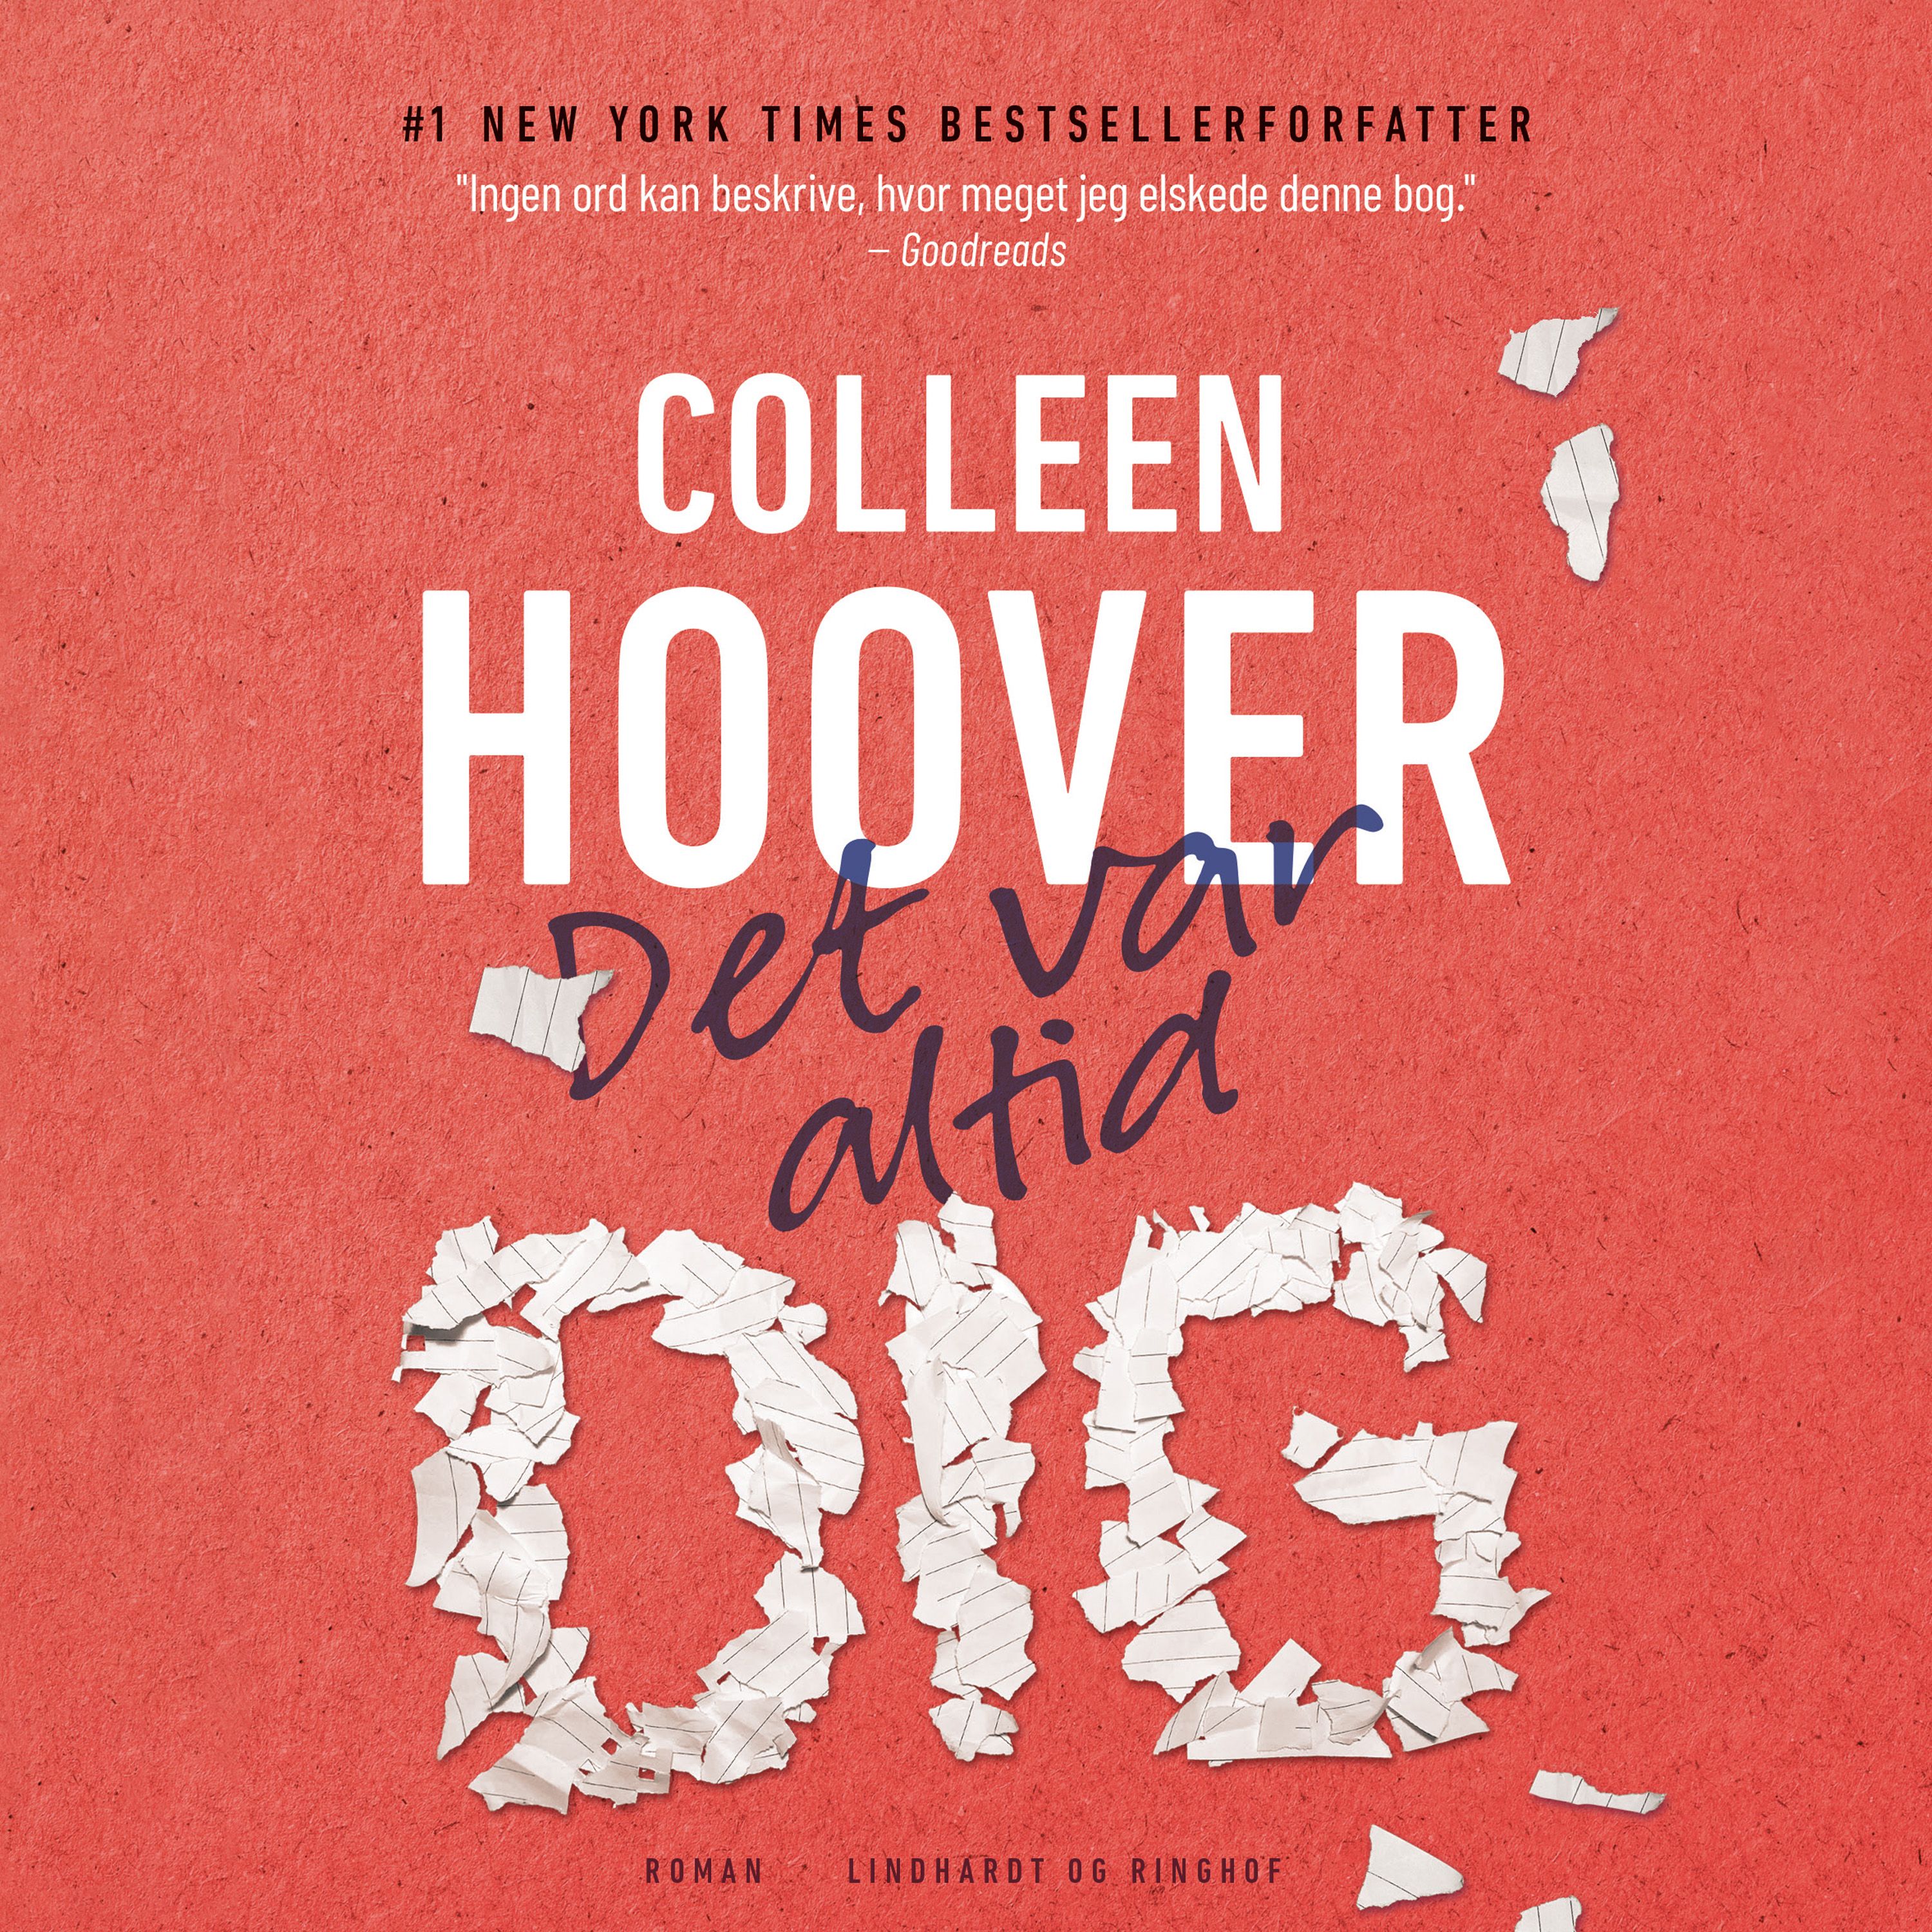 Det var altid dig, ljudbok av Colleen Hoover